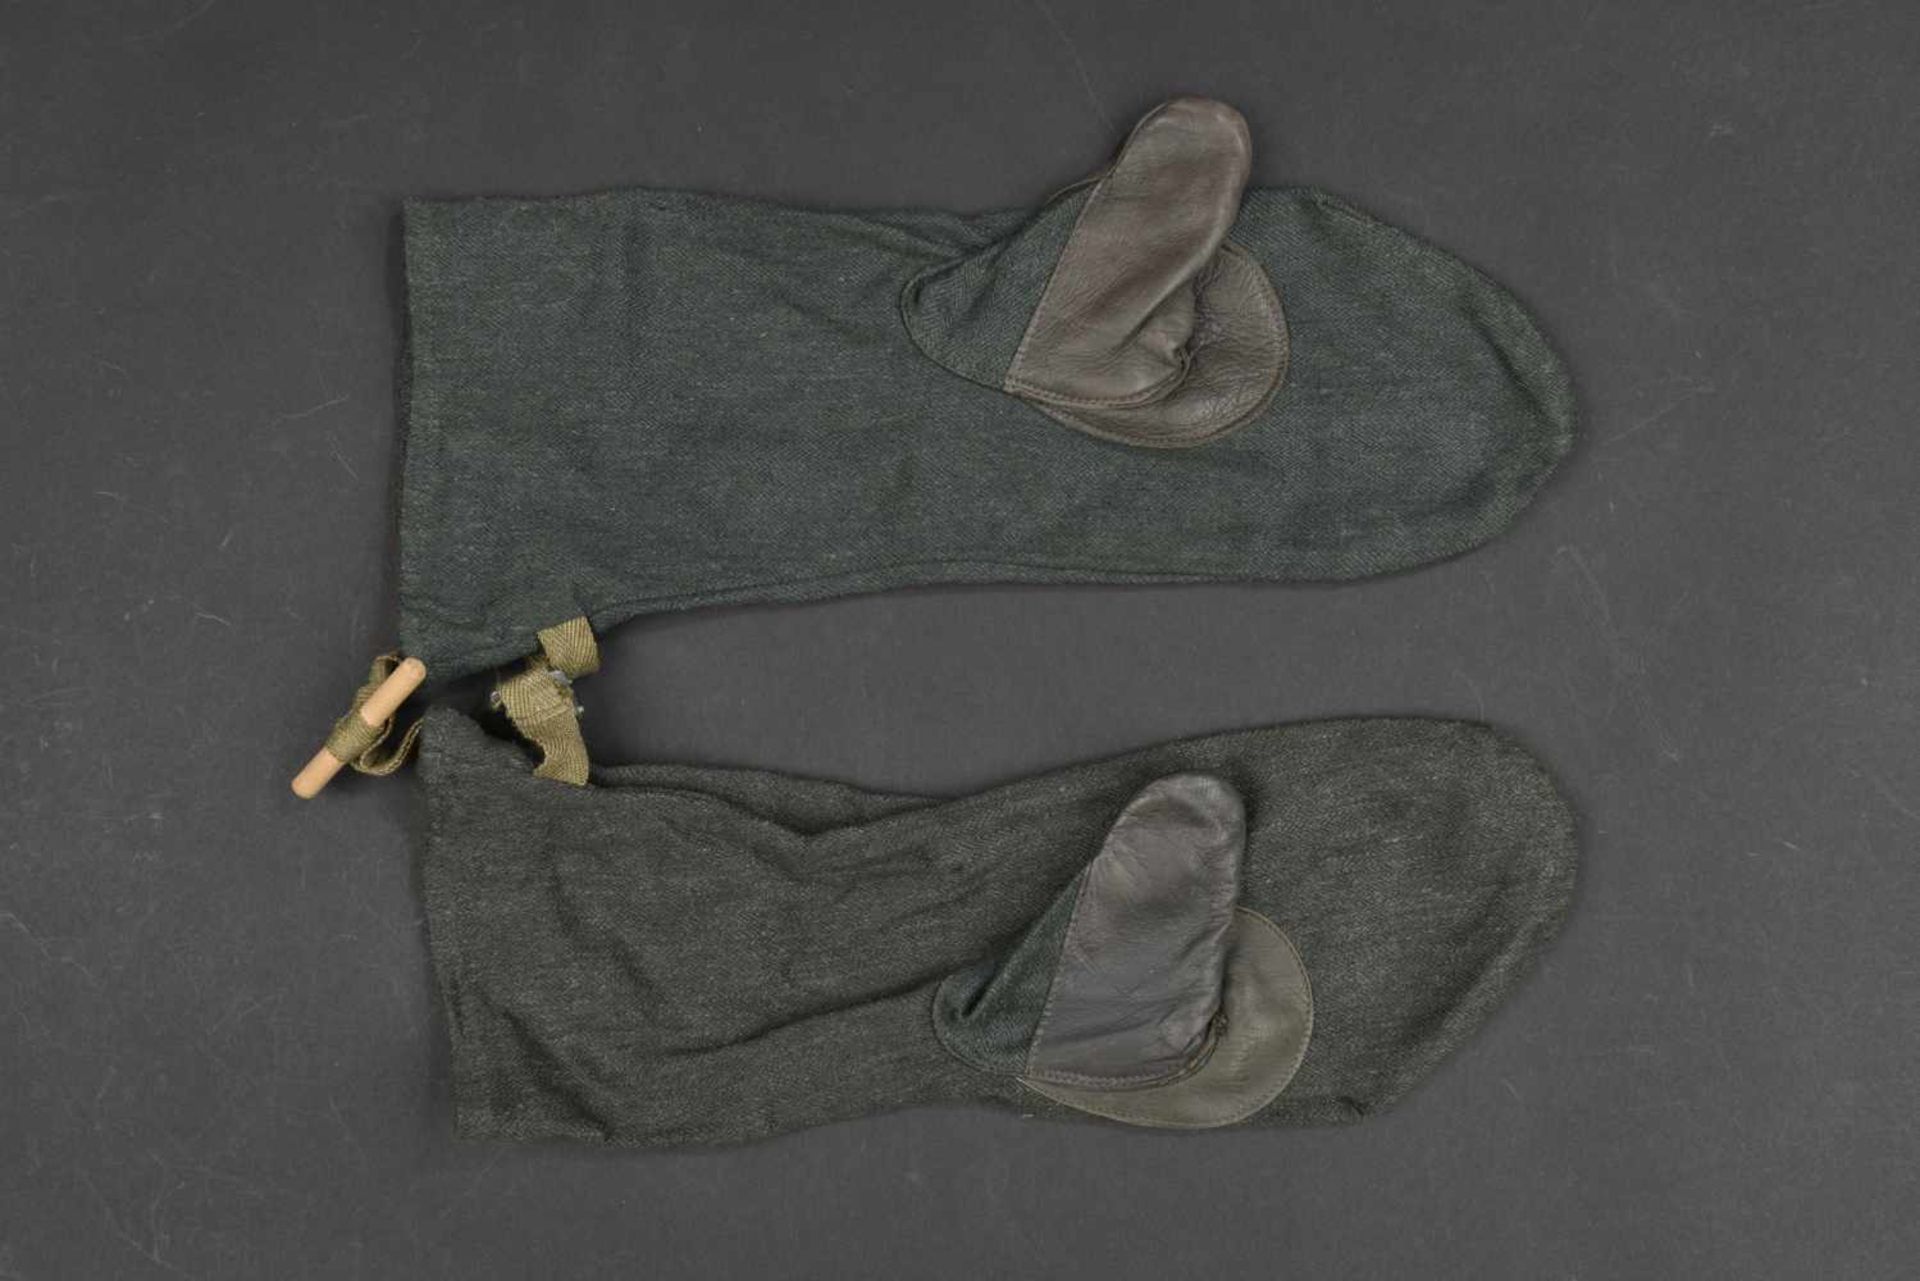 Gants allemand En drap Feldgrau, modèle type moufle avec pouce, renfort en cuir. Paire homogène,